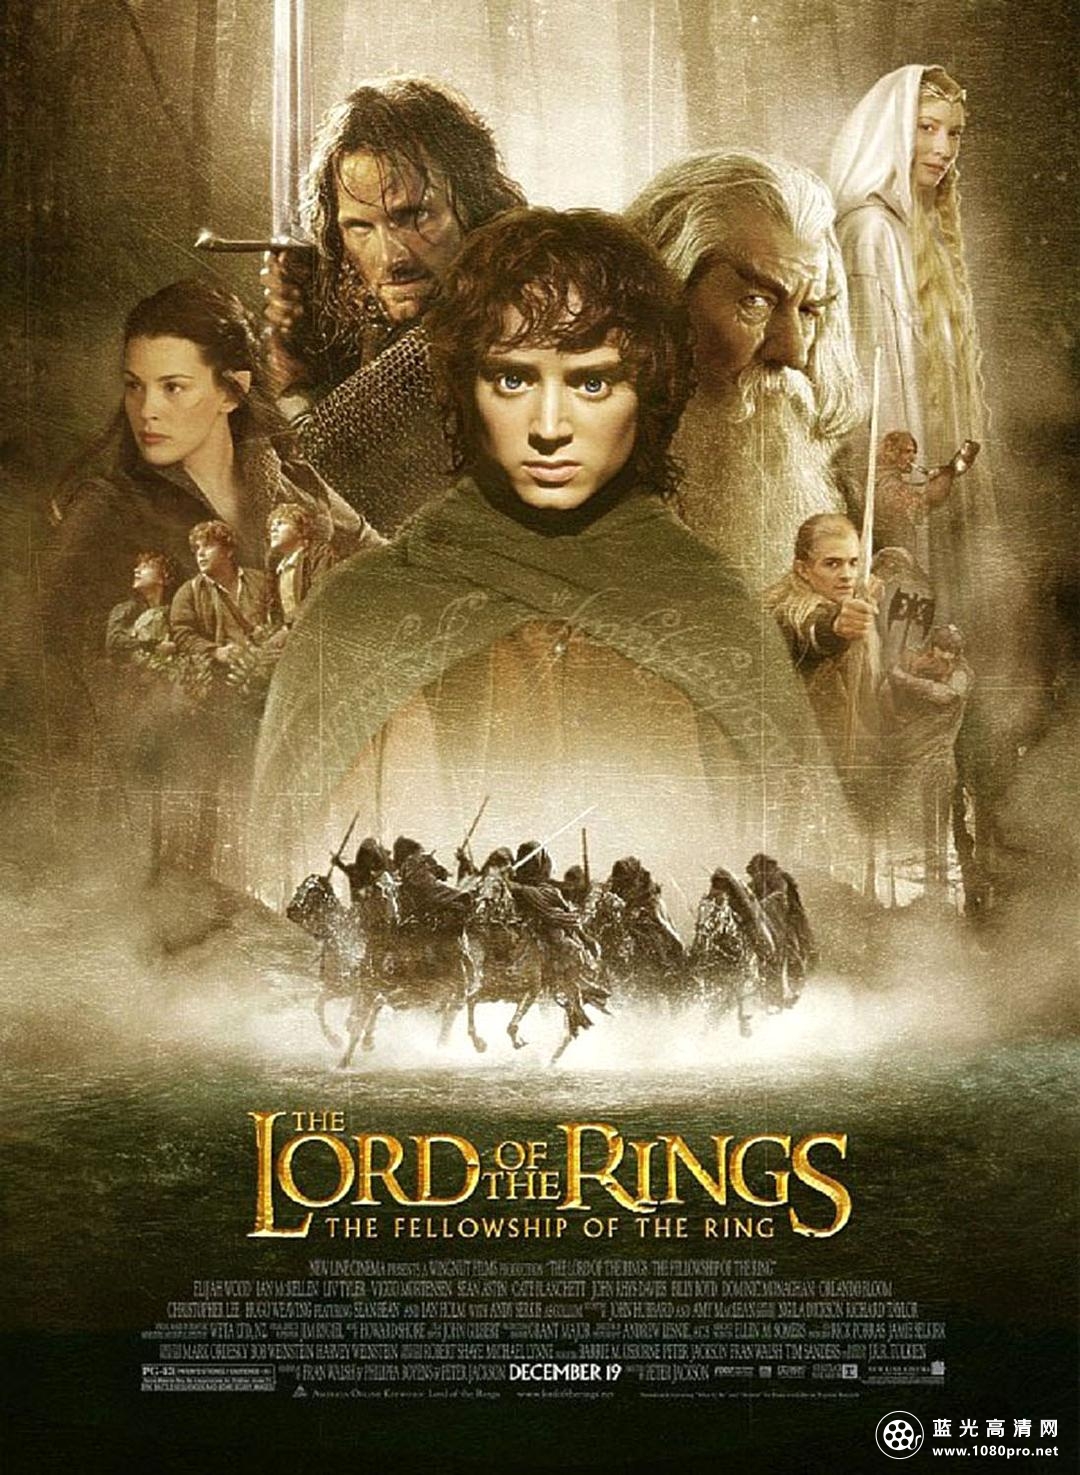 指环王1:魔戒再现/指环王I:护戒使者 The.Lord.of.the.Rings.The.Fellowship.of.the.Ring.2001.EXTENDED.1080p.BluRay.x264-SiNNERS 16.46GB-1.png